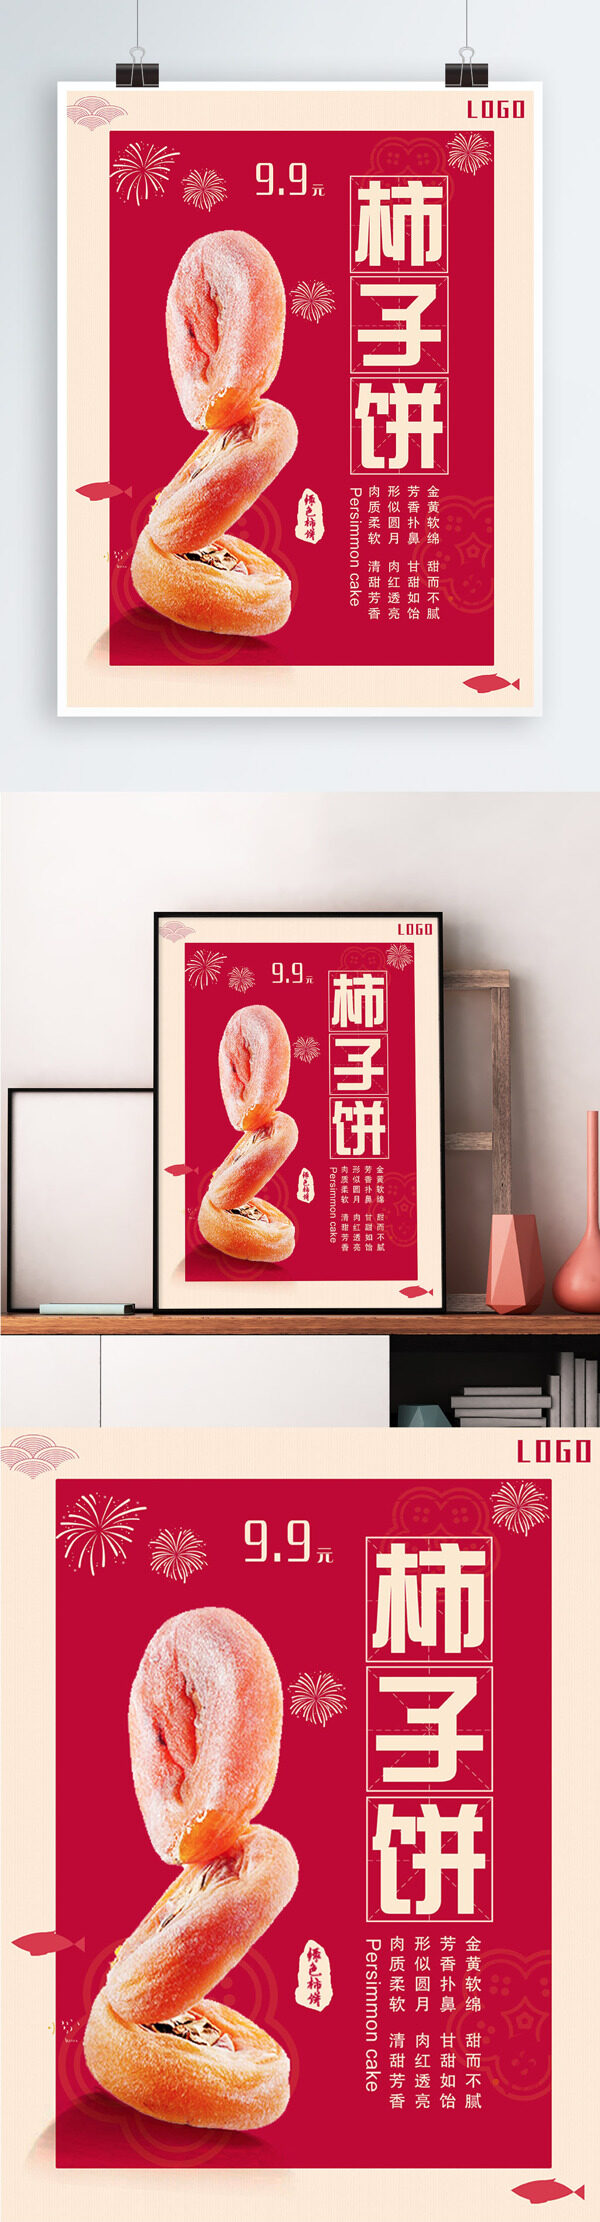 红色背景简约大气美味柿饼宣传海报